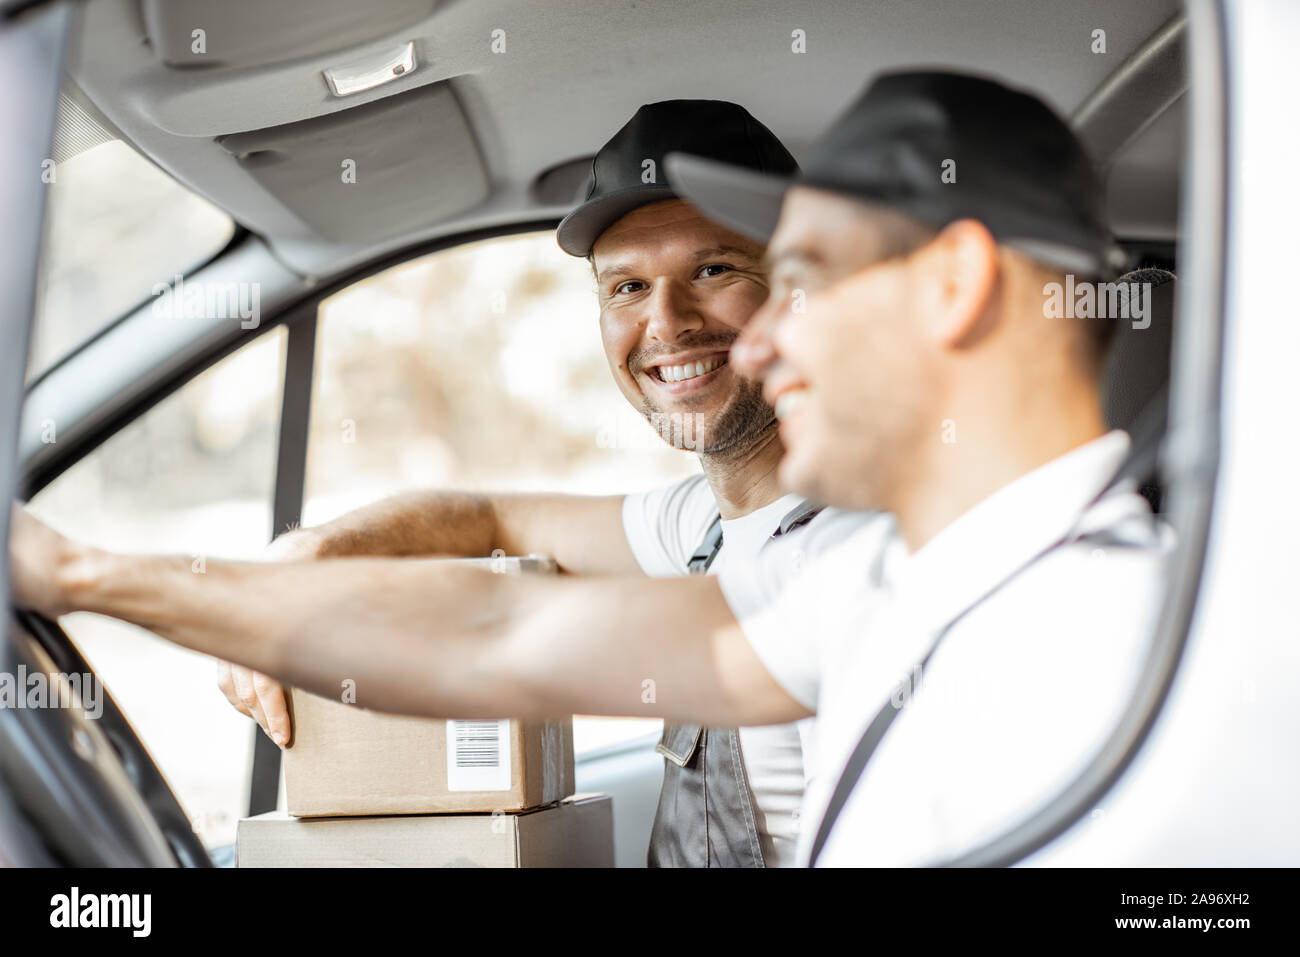 Dos empleados de la compañía de entrega alegre en uniforme divertirse mientras se conduce un vehículo de carga, la entrega de bienes a los clientes Foto de stock